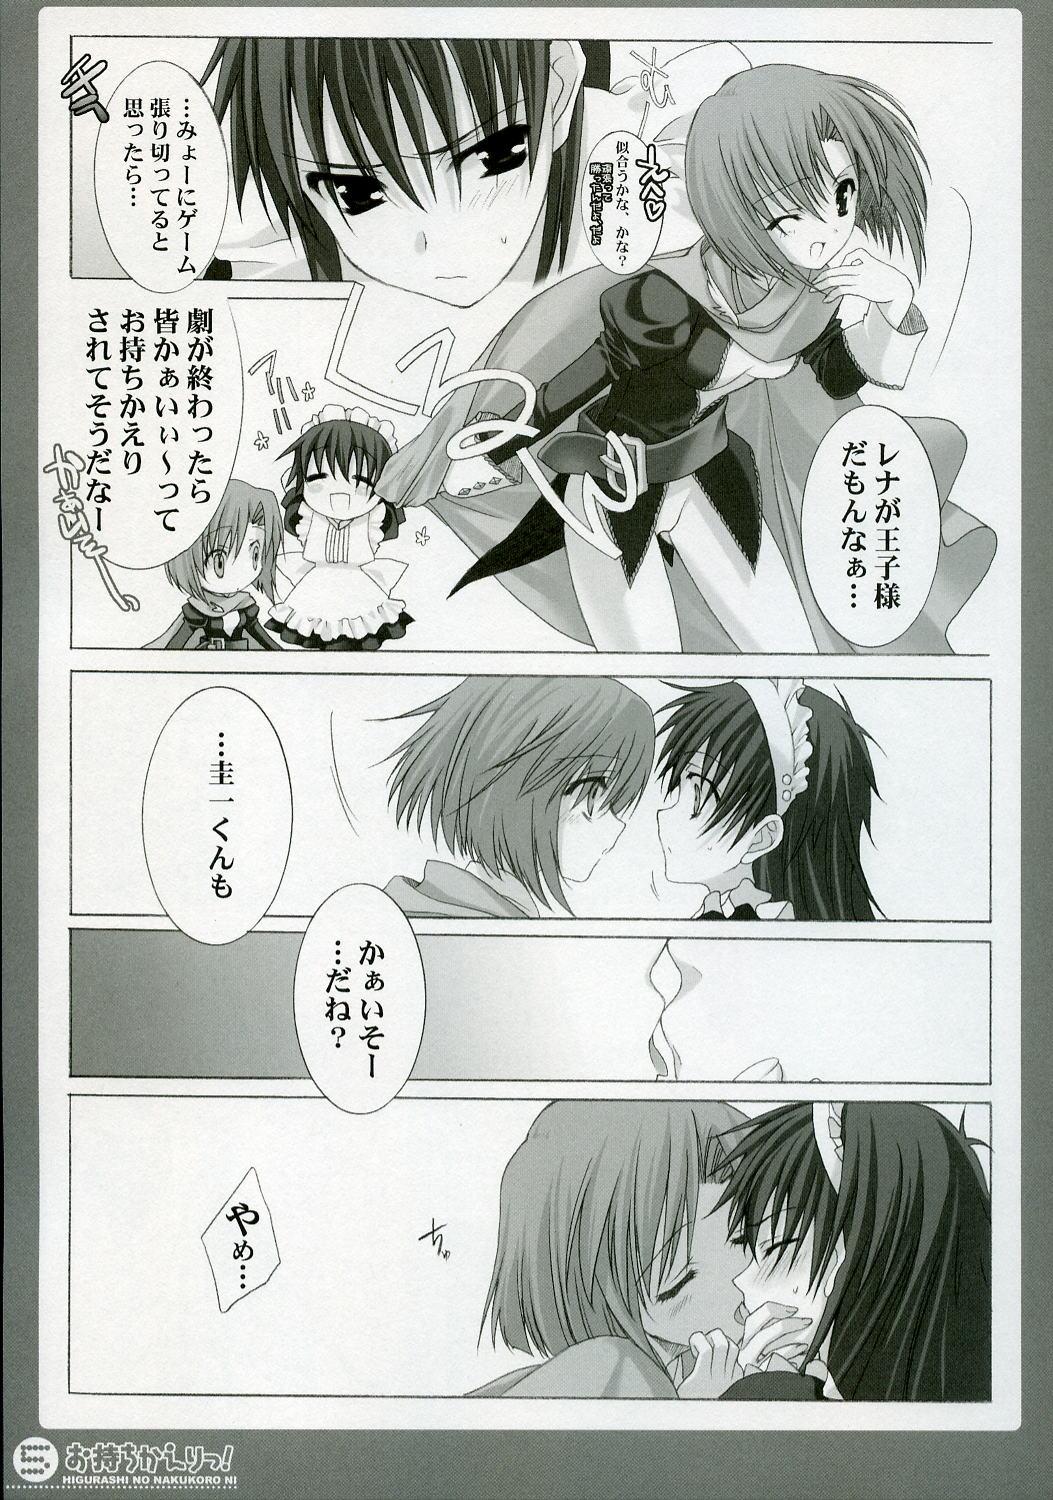 And Omochikaeri! - Higurashi no naku koro ni Gaycum - Page 4